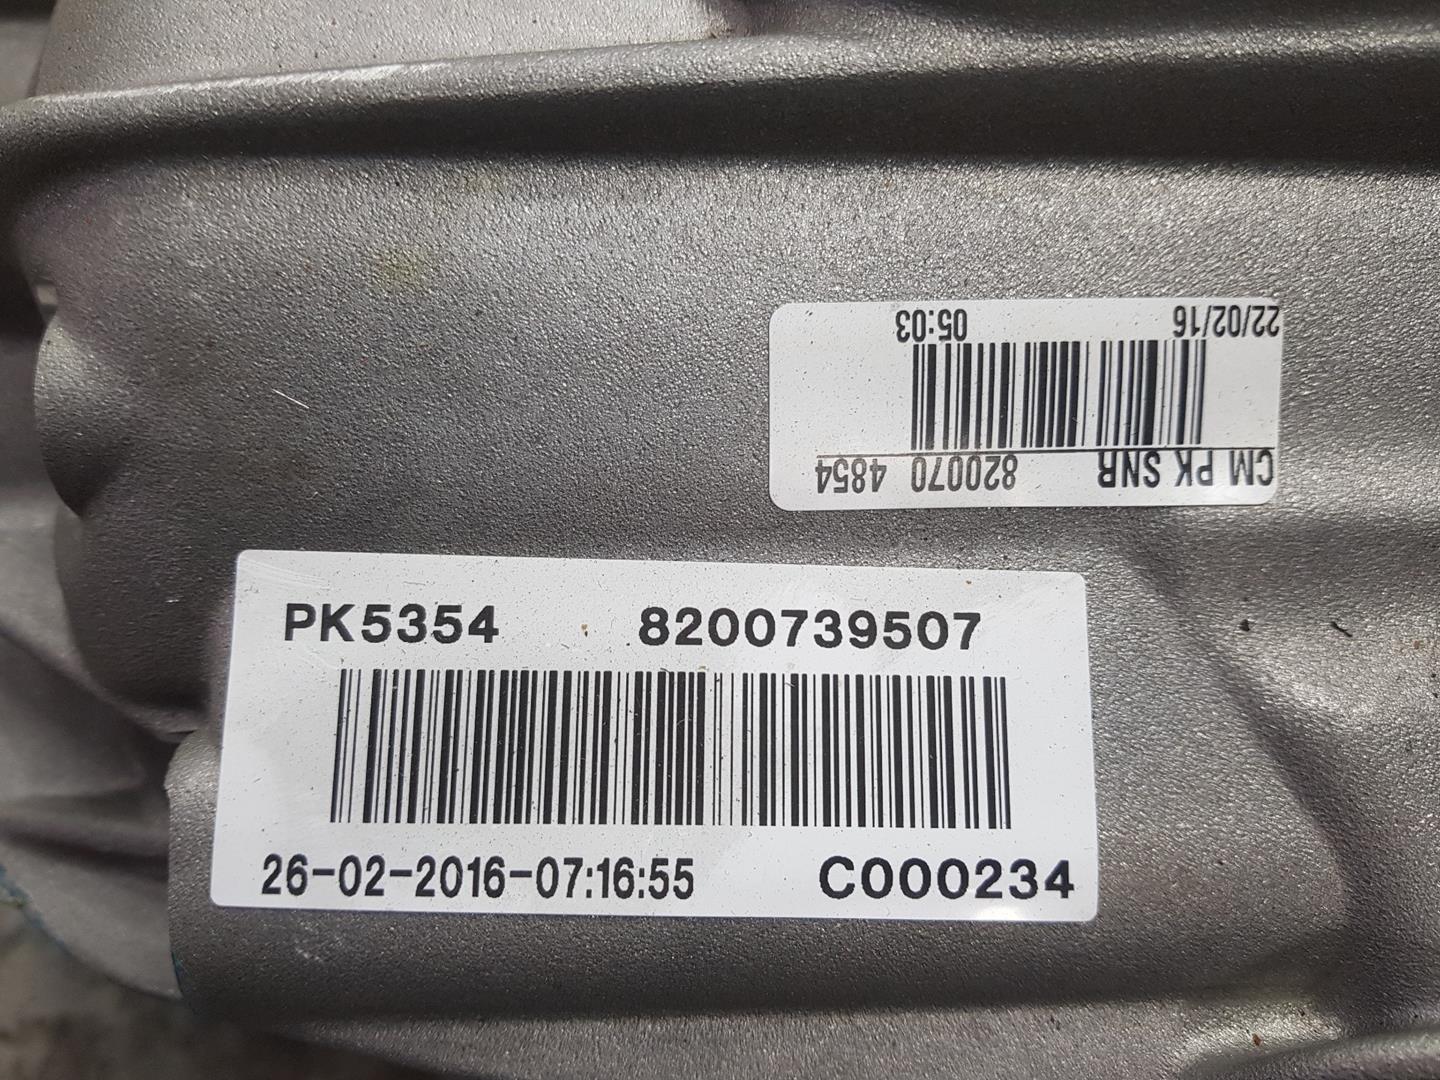 OPEL Corsa B (1993-2000) Коробка передач PK5354, 8200739507, 9318774993192648 24134325